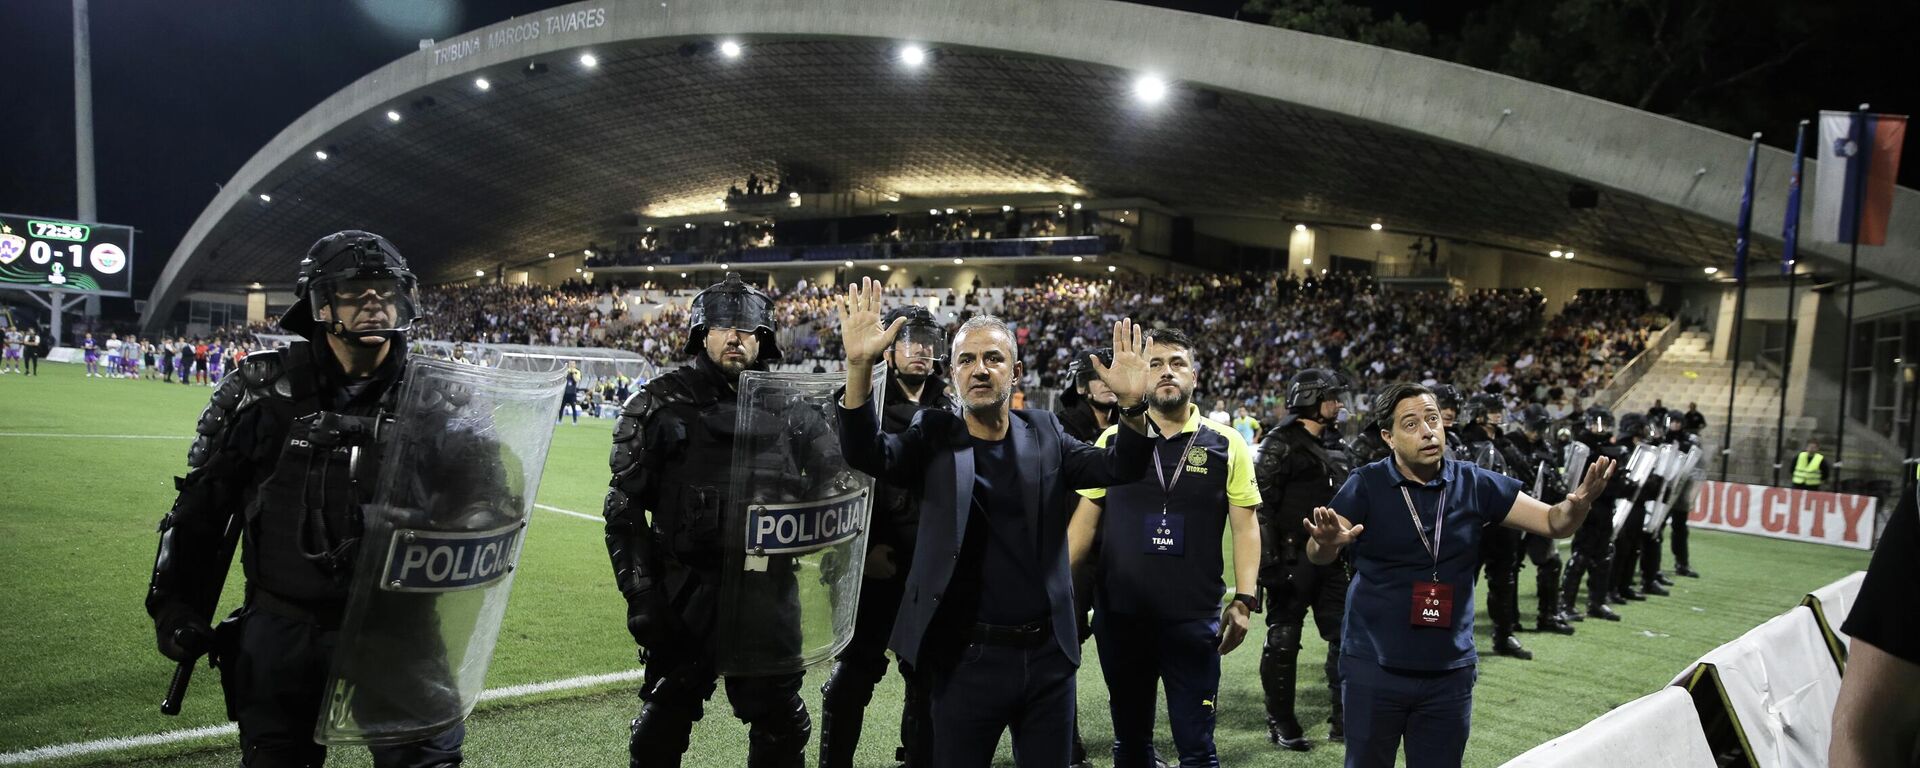 Fenerbahçe, UEFA Avrupa Konferans Ligi 3. eleme turu rövanş maçında Maribor ile Ljudski Vrt Stadı'nda karşılaştı. Maç,  tribünde yaşanan olaylar sebebiyle durduruldu.  - Sputnik Türkiye, 1920, 17.08.2023